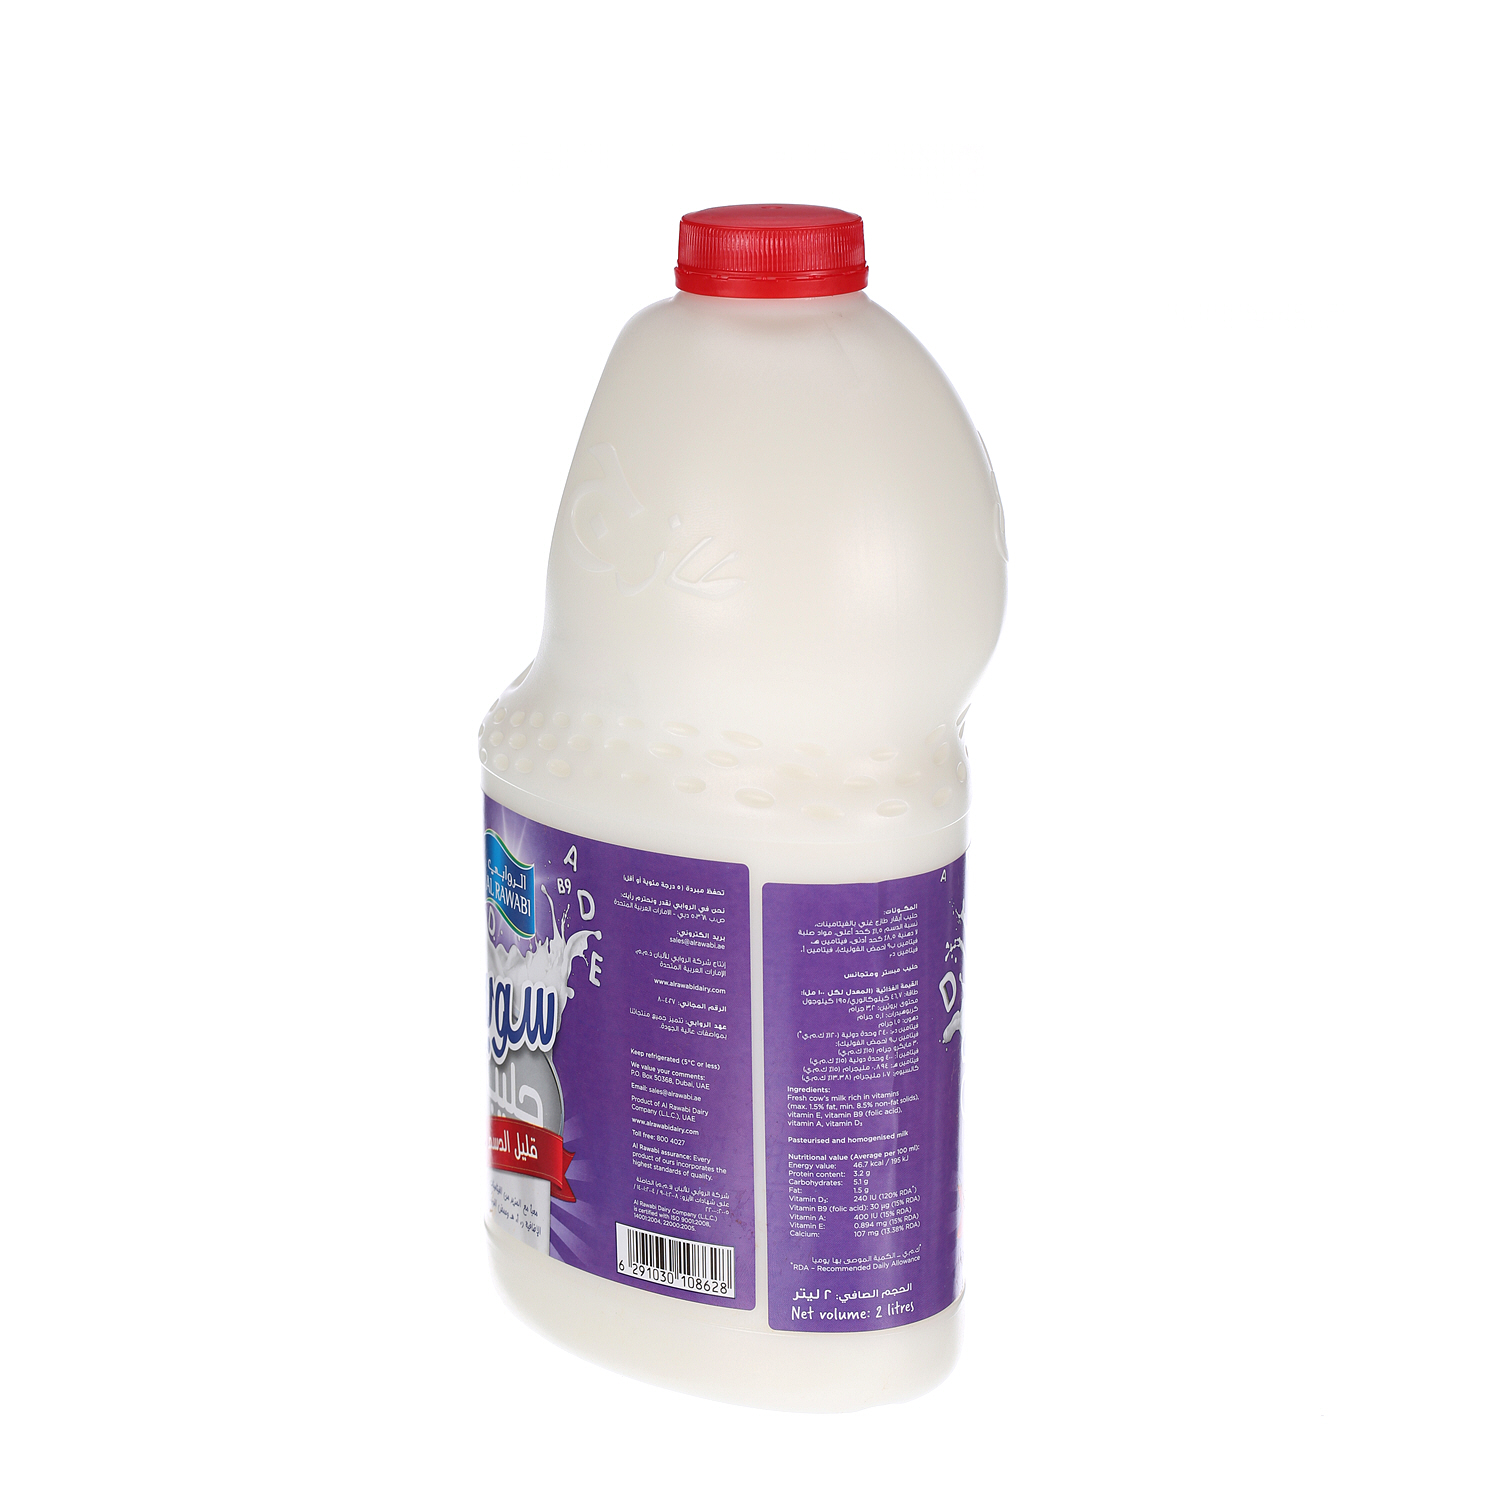 Al Rawabi Super Fresh Milk Low Fat 2Ltr